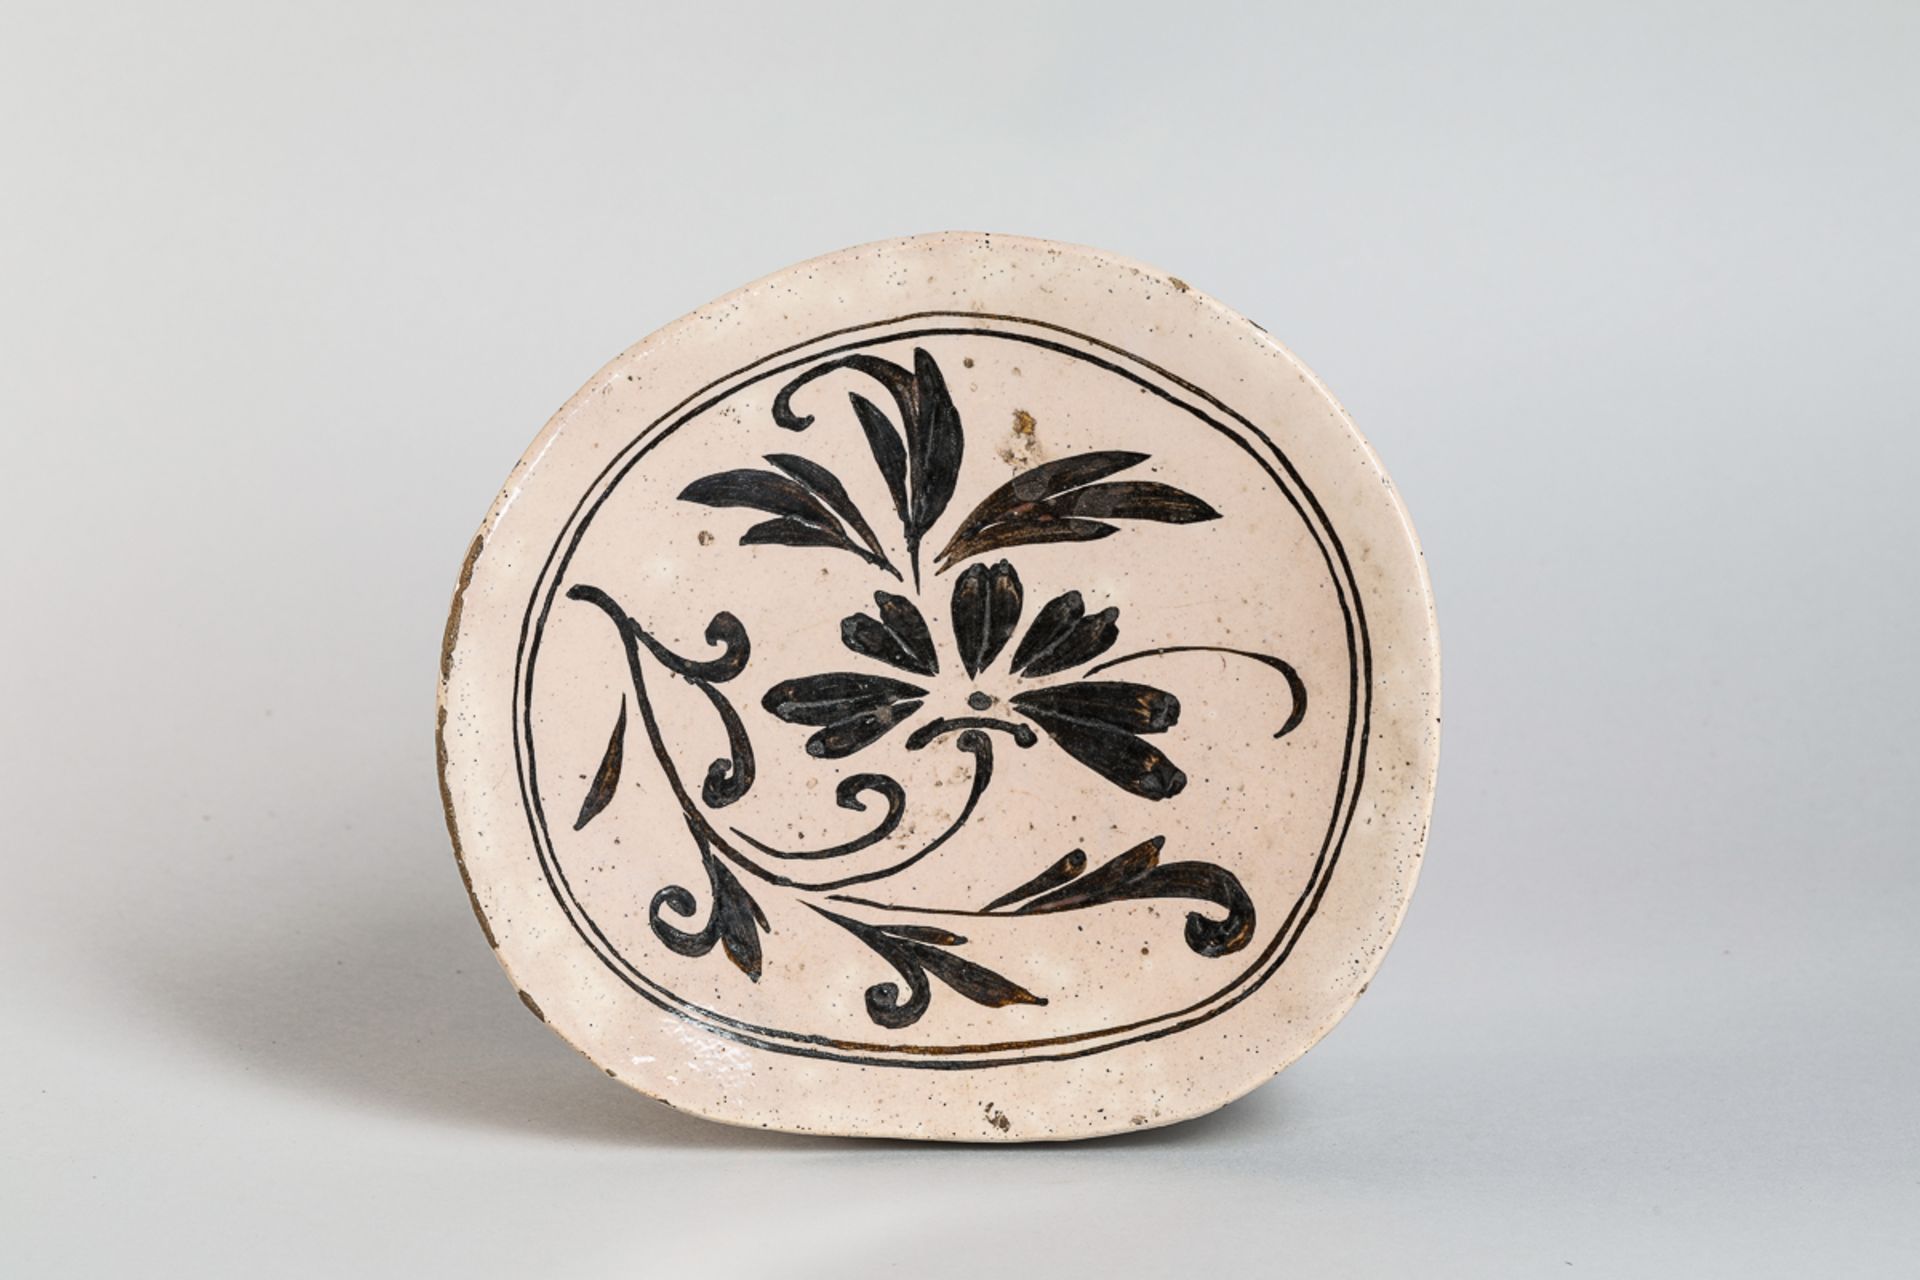 Repose nuque cizhu en céramique à décor floral brun sur glaçure monochrome beige crémeux Chine - Image 2 of 5